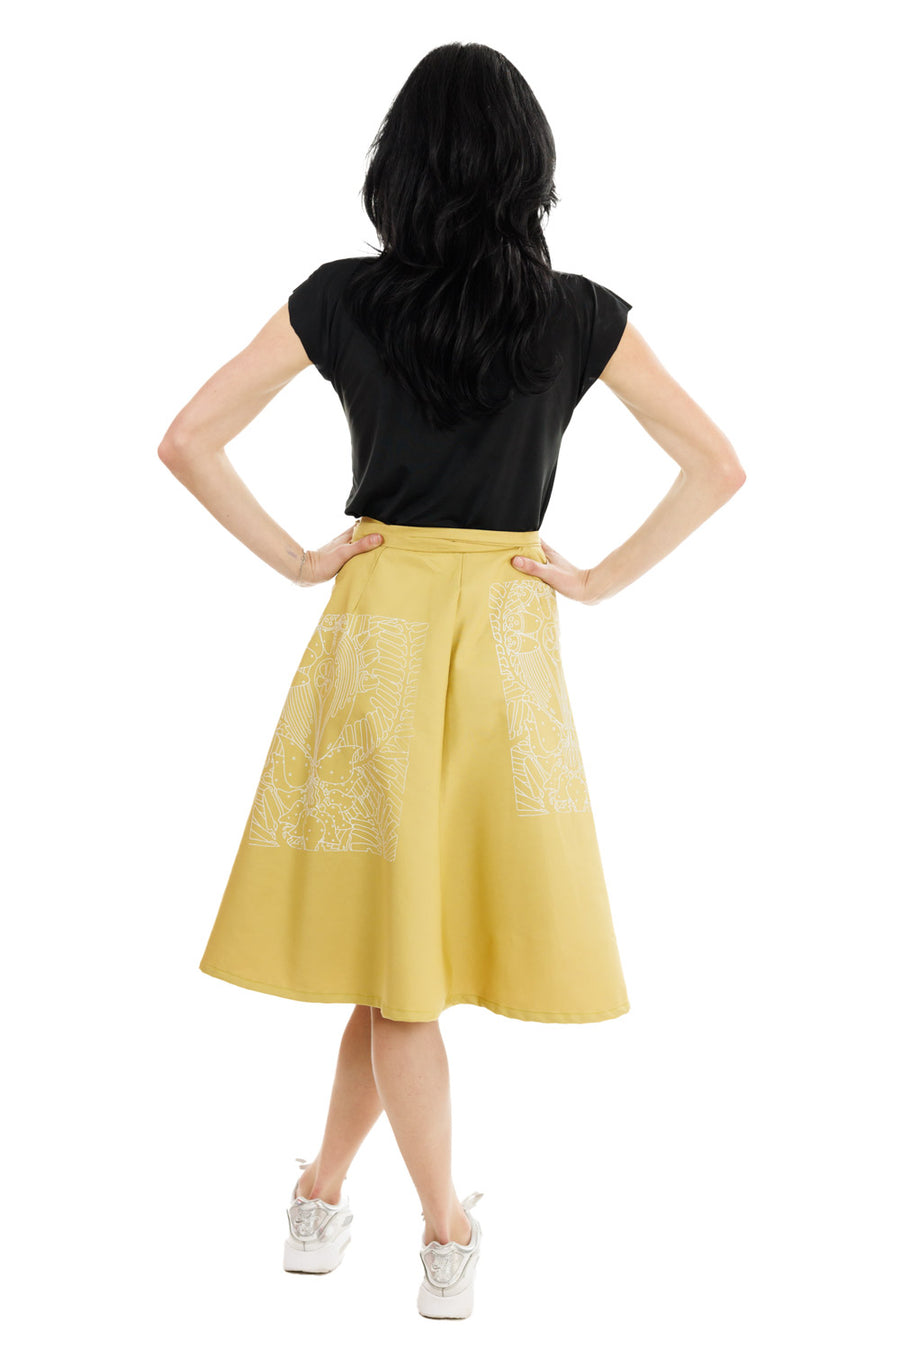 Yellow Doodle Art Wrap Skirt